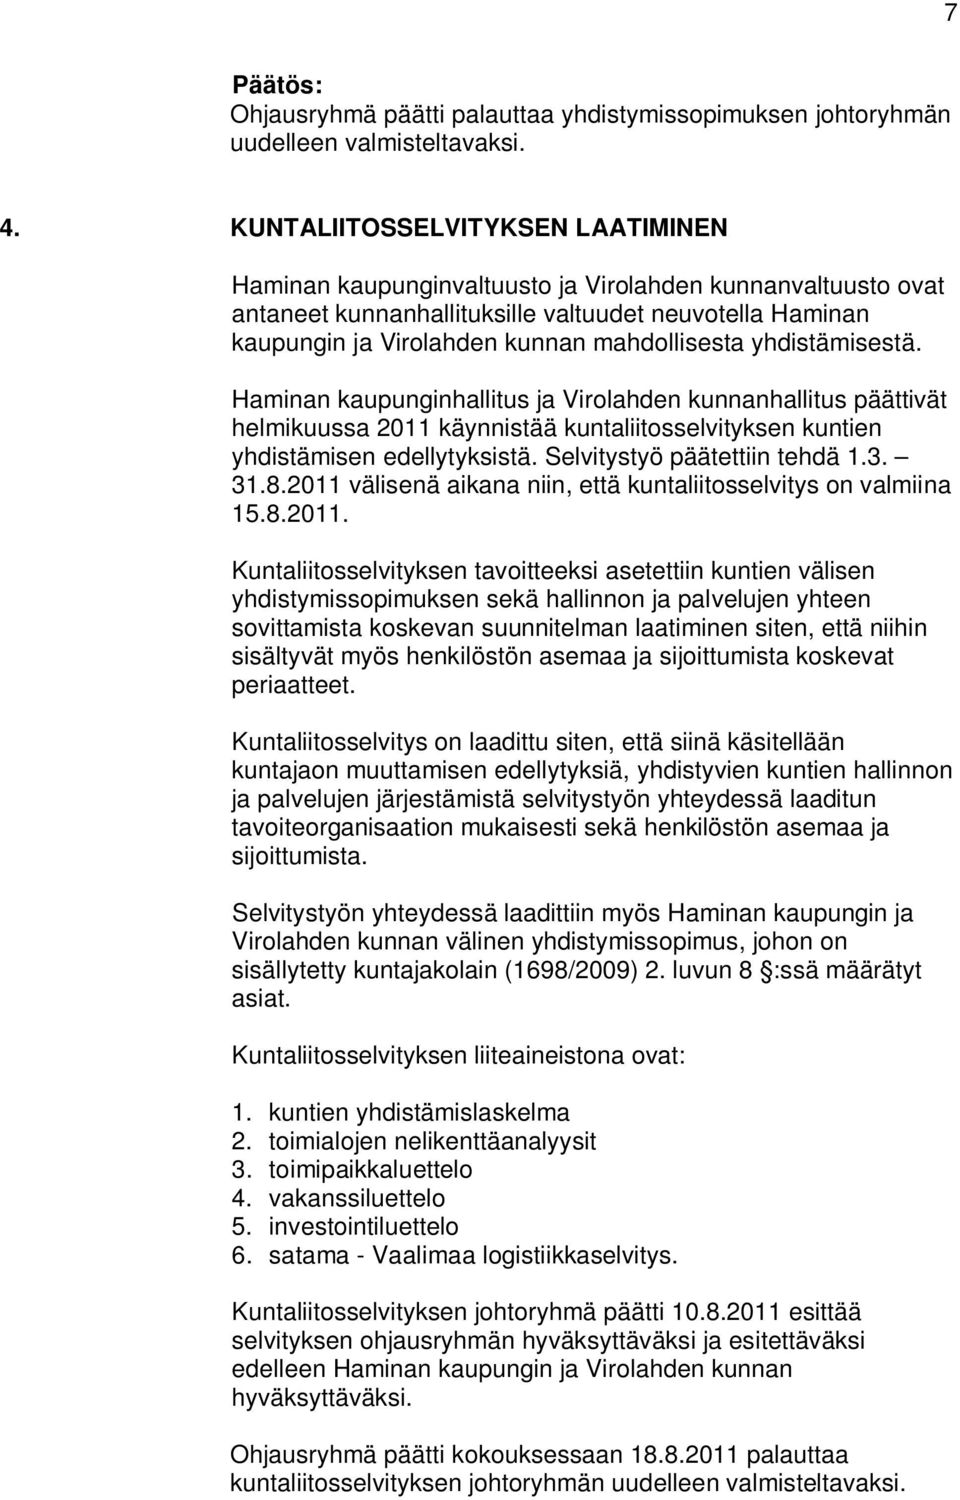 yhdistämisestä. Haminan kaupunginhallitus ja Virolahden kunnanhallitus päättivät helmikuussa 2011 käynnistää kuntaliitosselvityksen kuntien yhdistämisen edellytyksistä. Selvitystyö päätettiin tehdä 1.